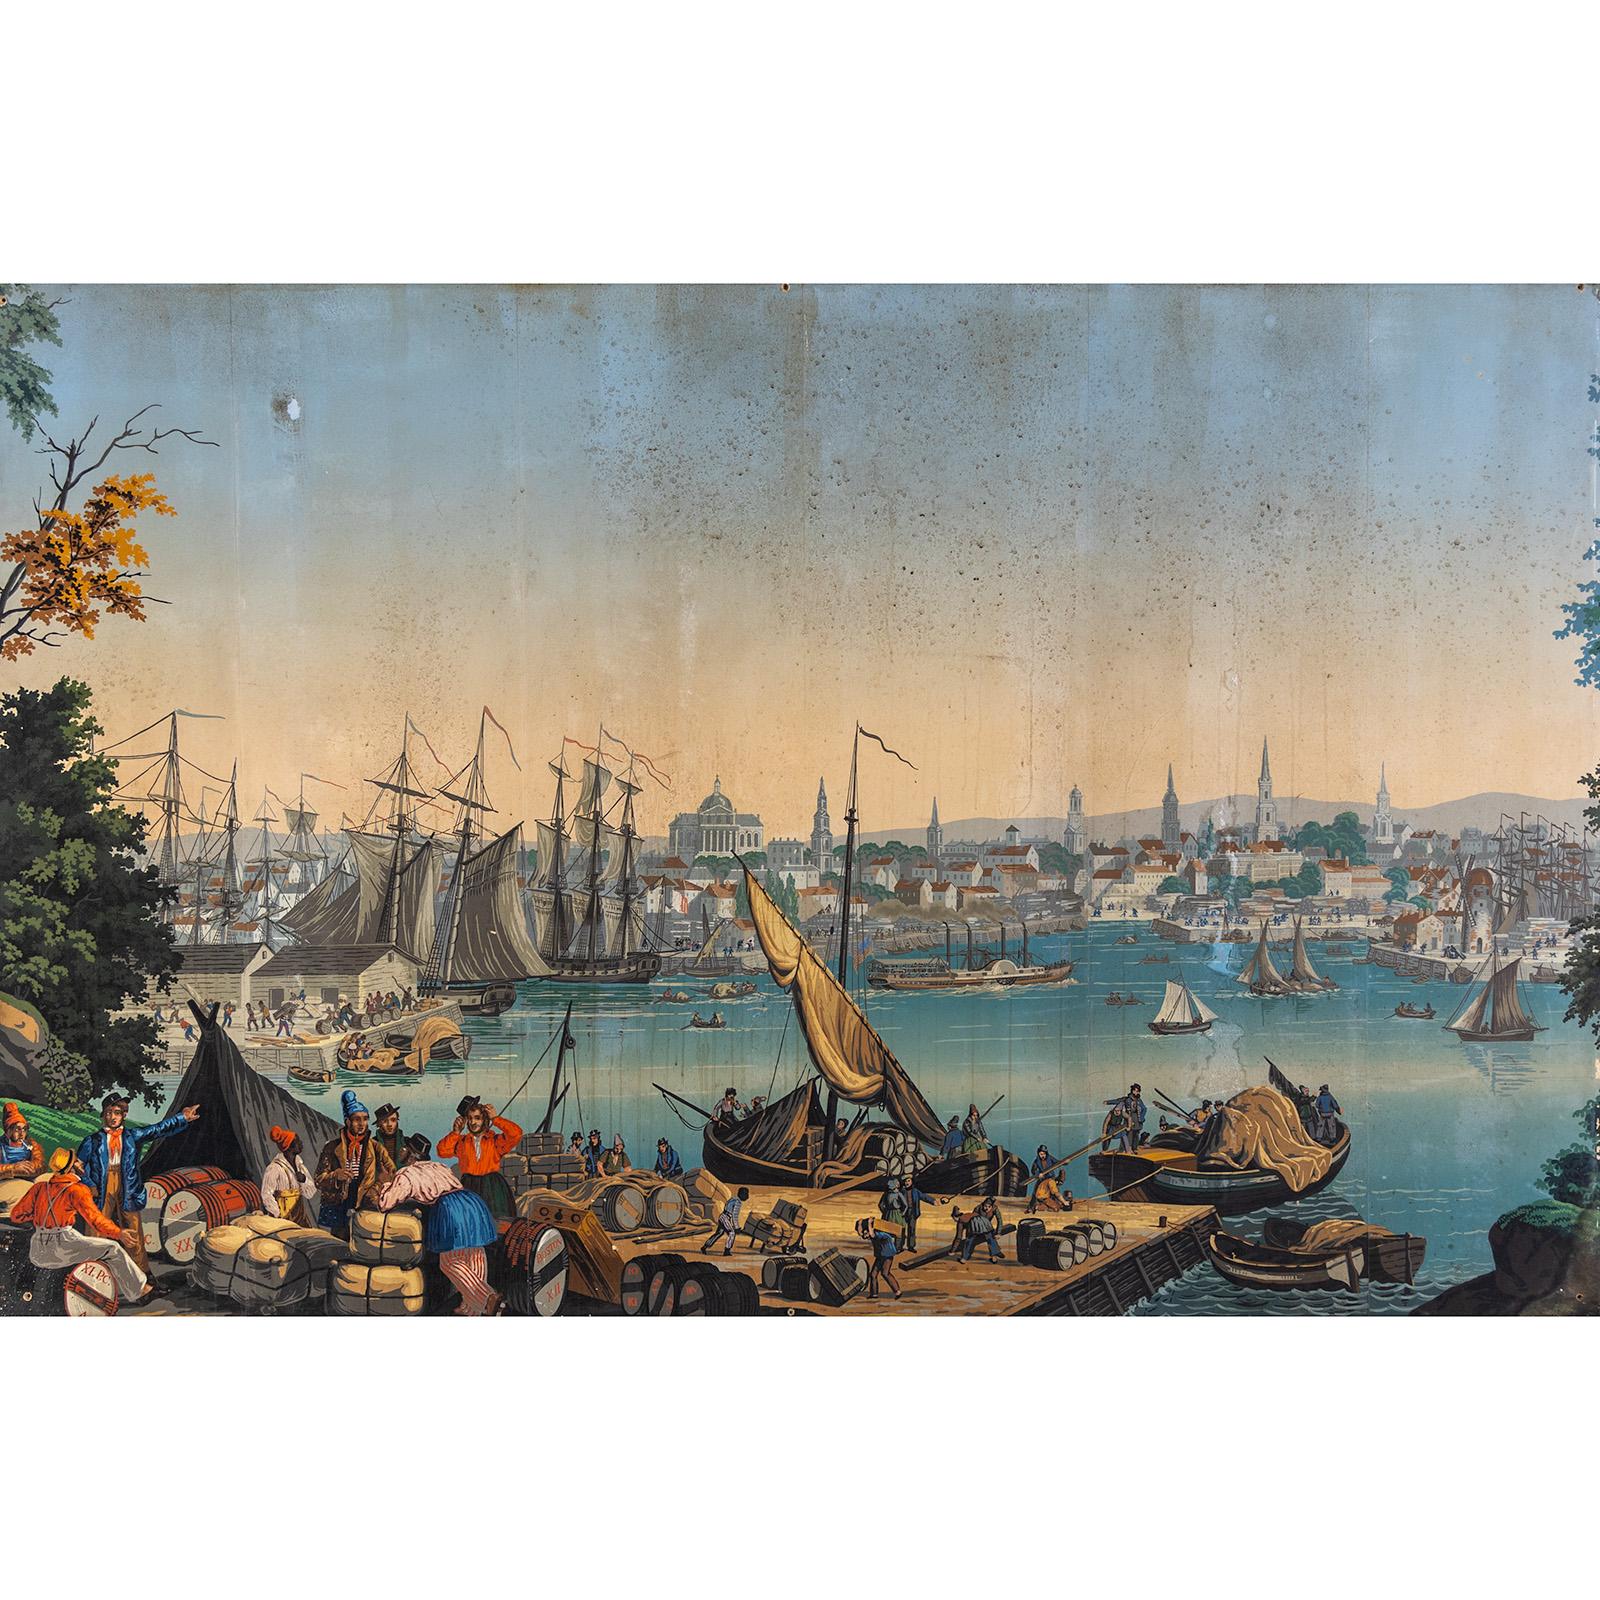 Grand papier peint imprimé en bloc avec une scène idyllique et idéaliste du port de Boston. Le motif provient de la série 